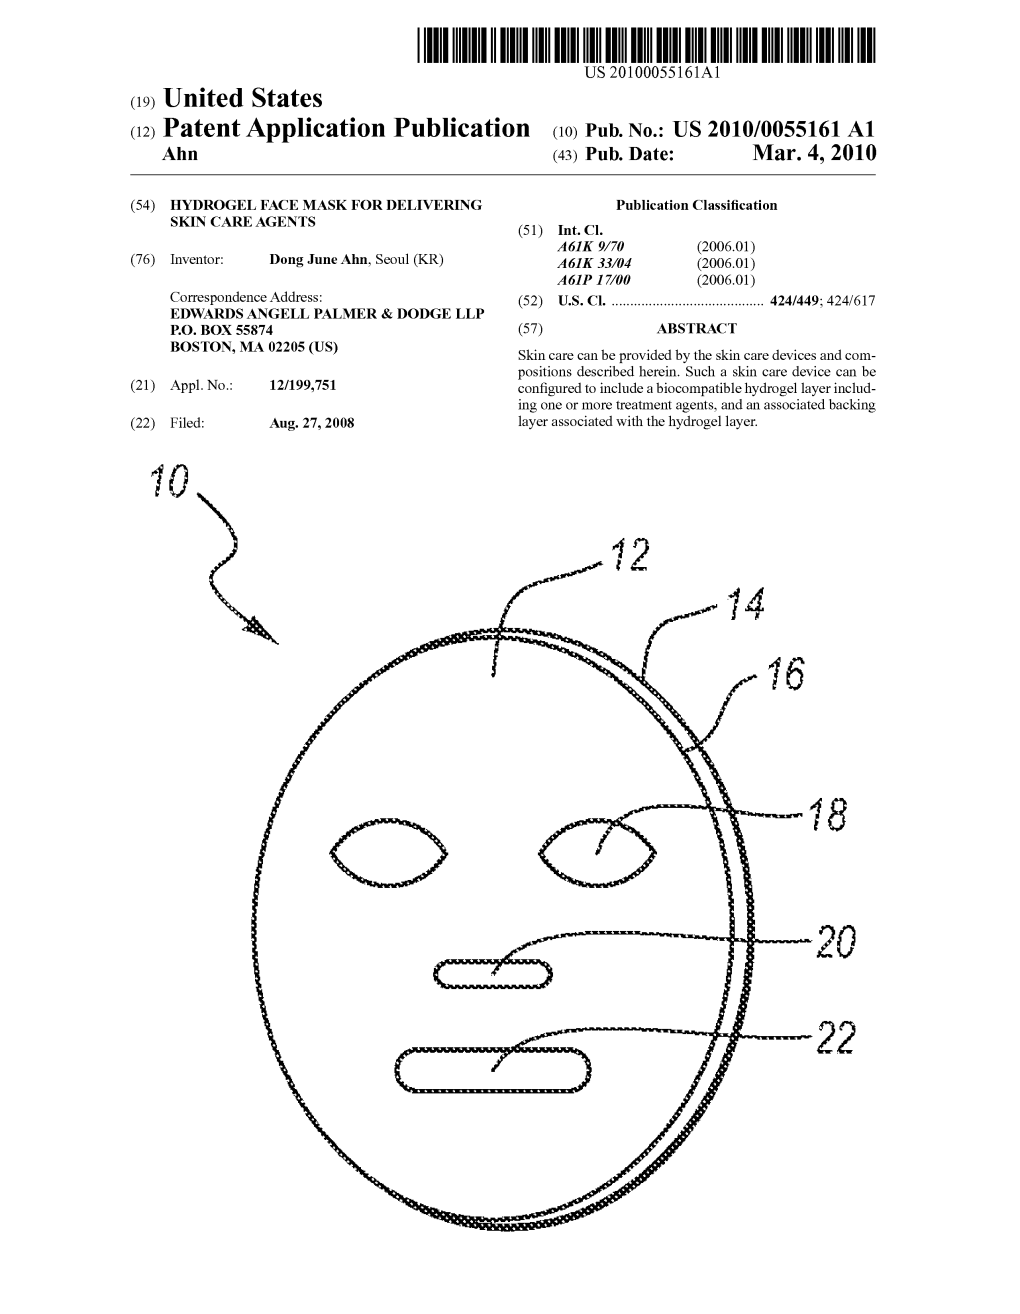 (12) Patent Application Publication (10) Pub. No.: US 2010/0055161 A1 Ahn (43) Pub